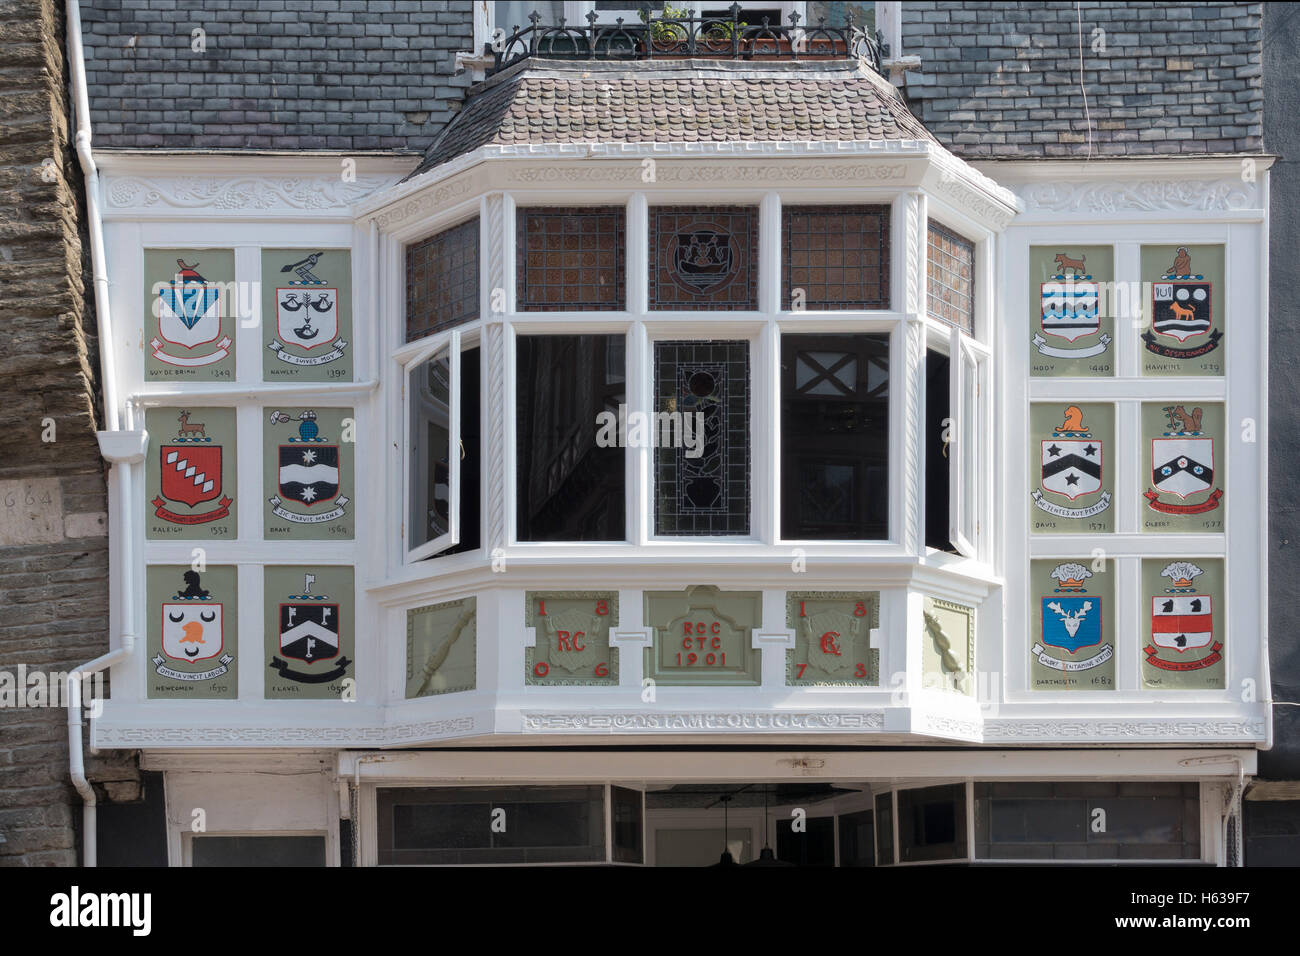 Coloreados blasones rodean este casco bay window en Dartmouth, Devon, Reino Unido Foto de stock